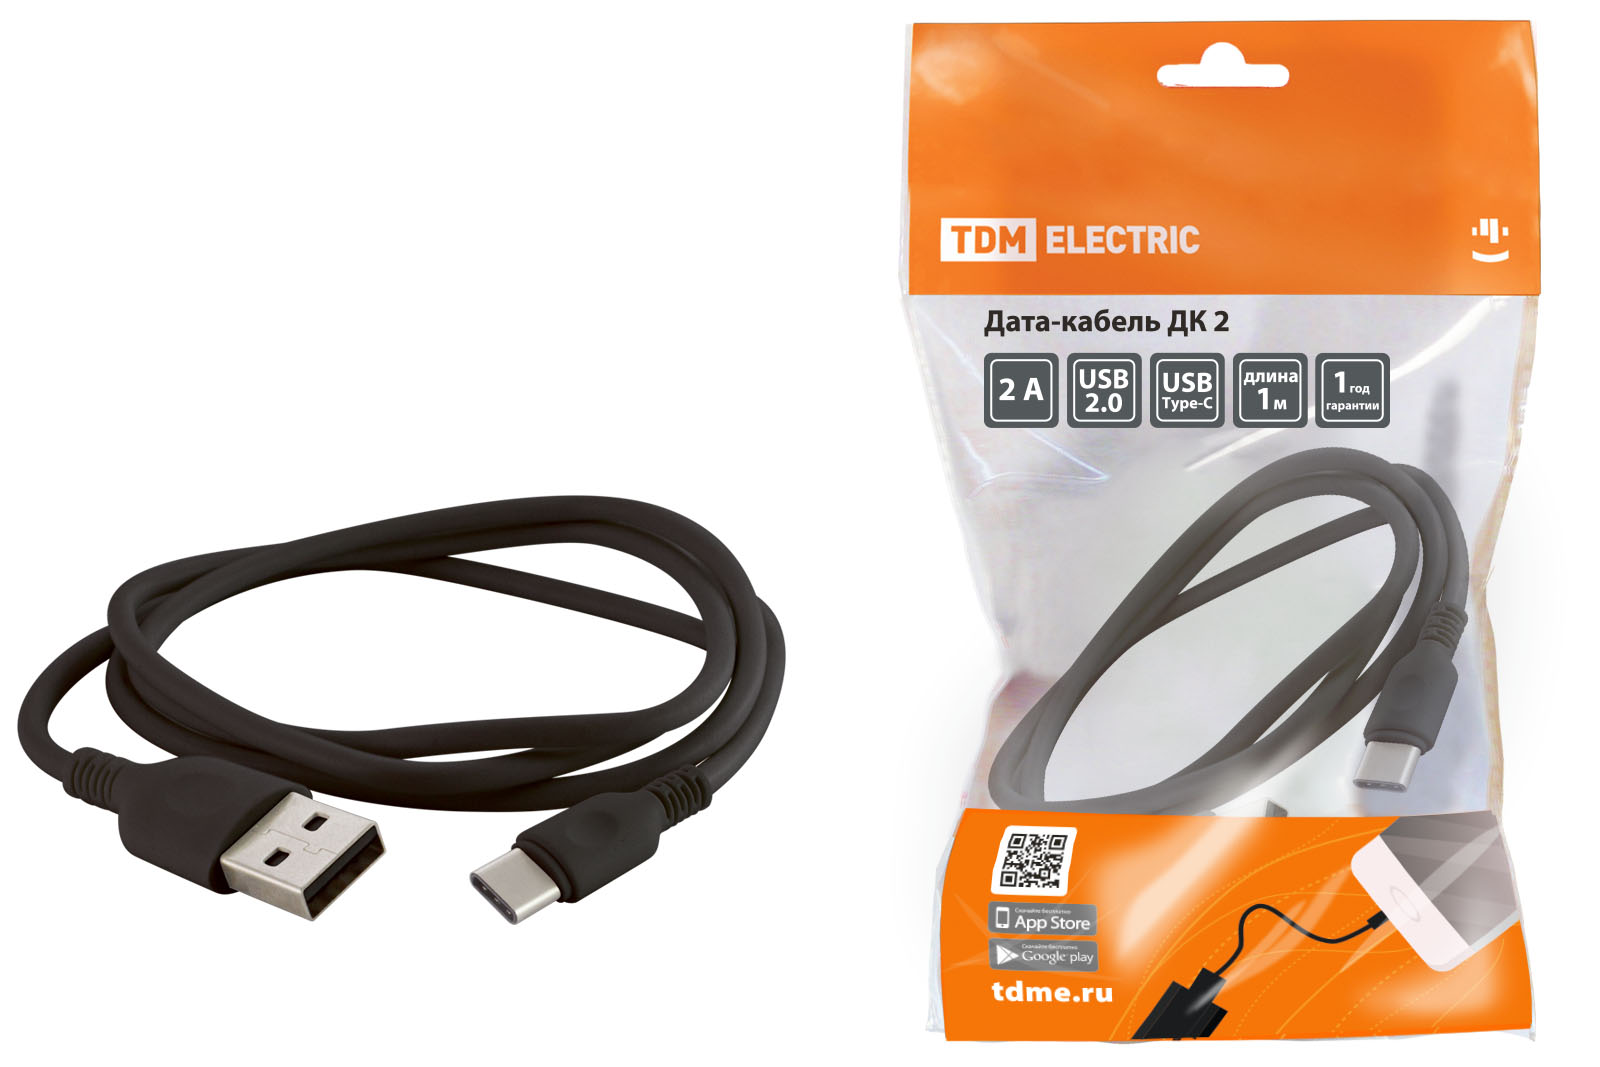 Дата-кабель TDM SQ1810-0302, USB - USB Type-C, 1 м, черный